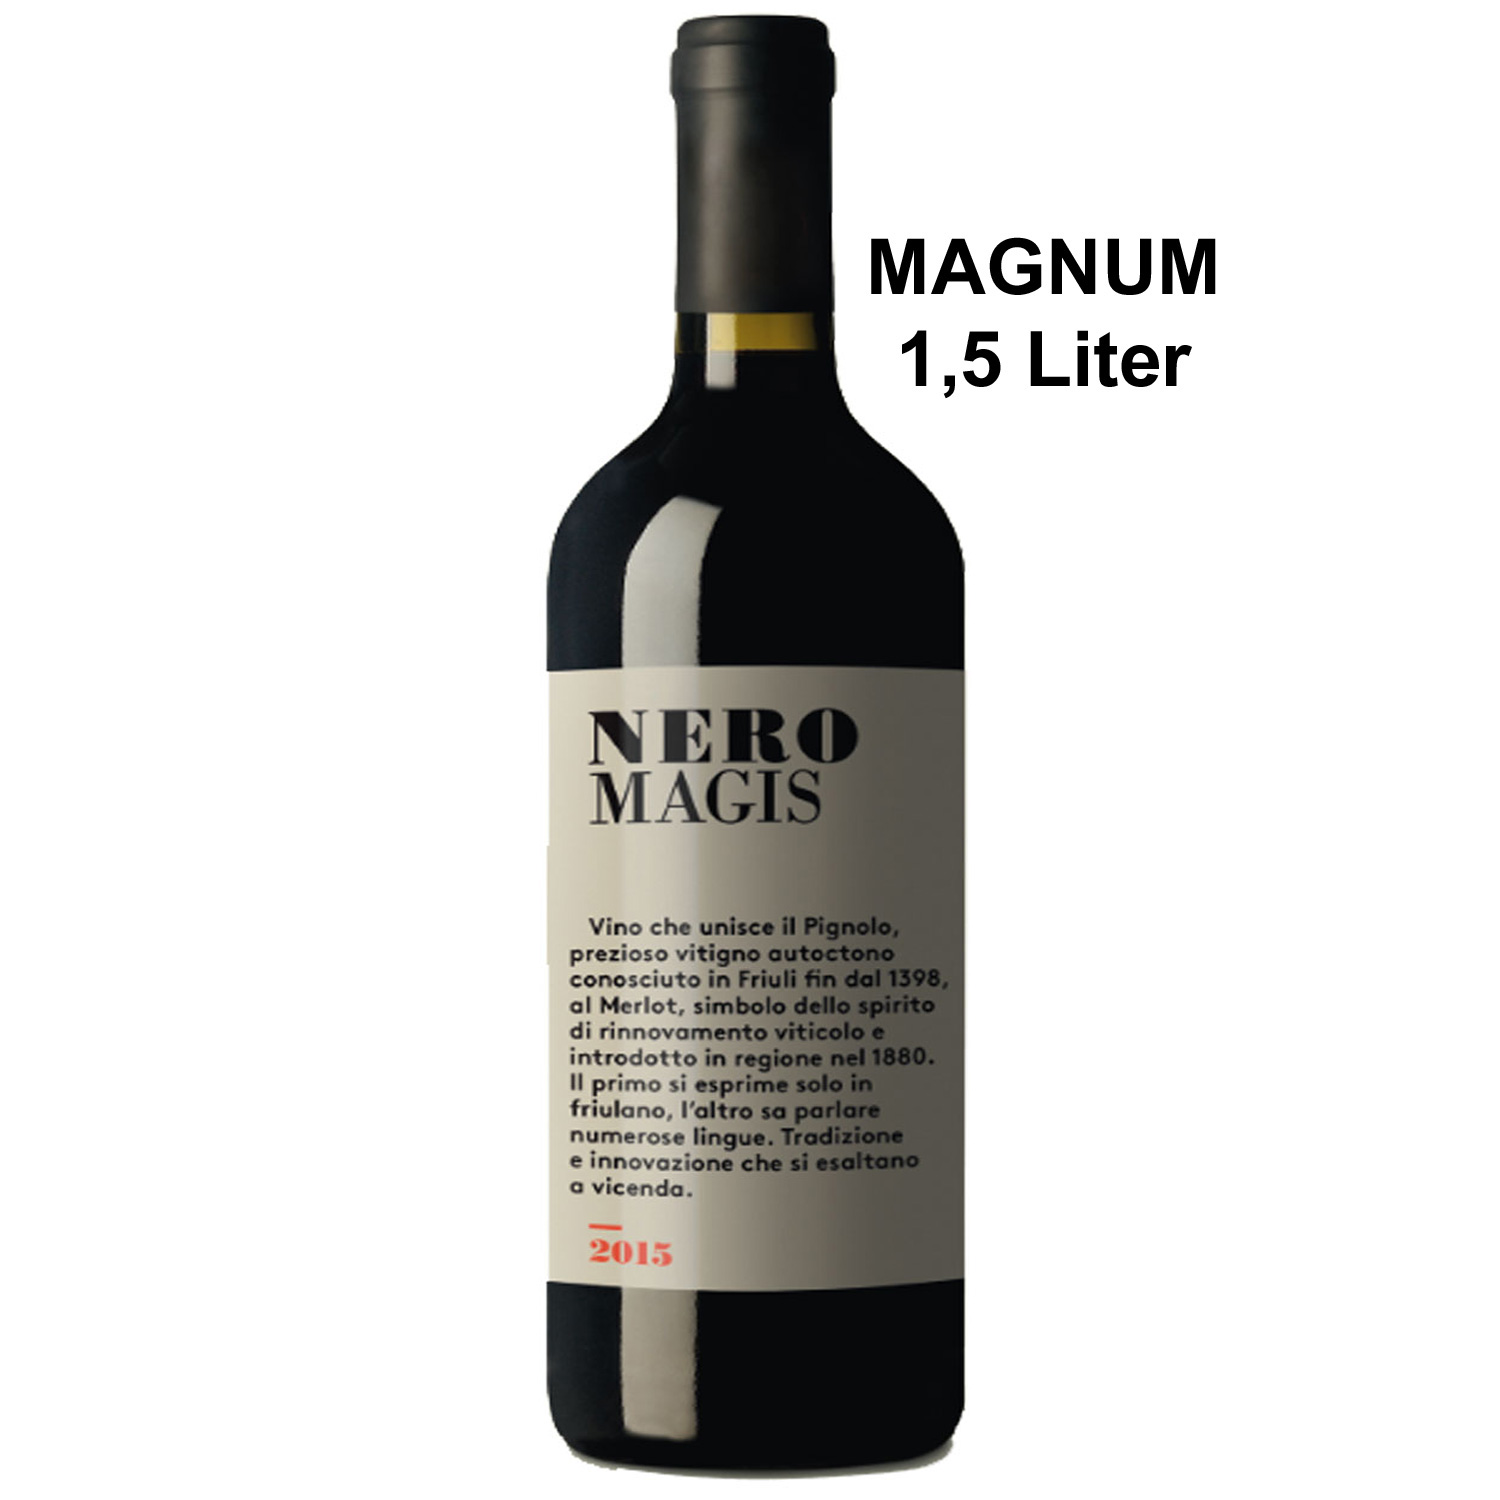 Nero Magis 2015 Magnum in Einzelholzkiste